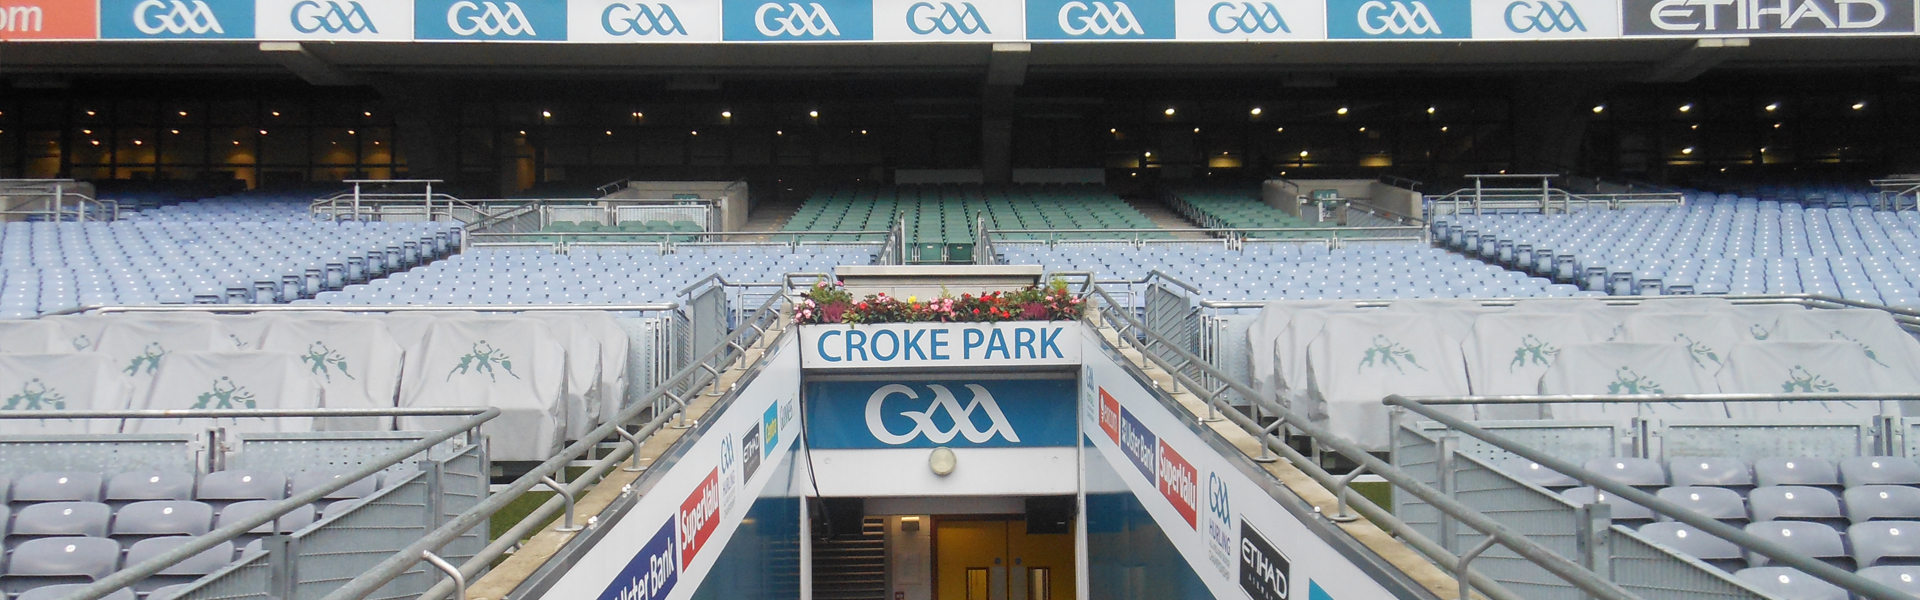 Conheça o Croke Park, um estádio diferente em Dublin